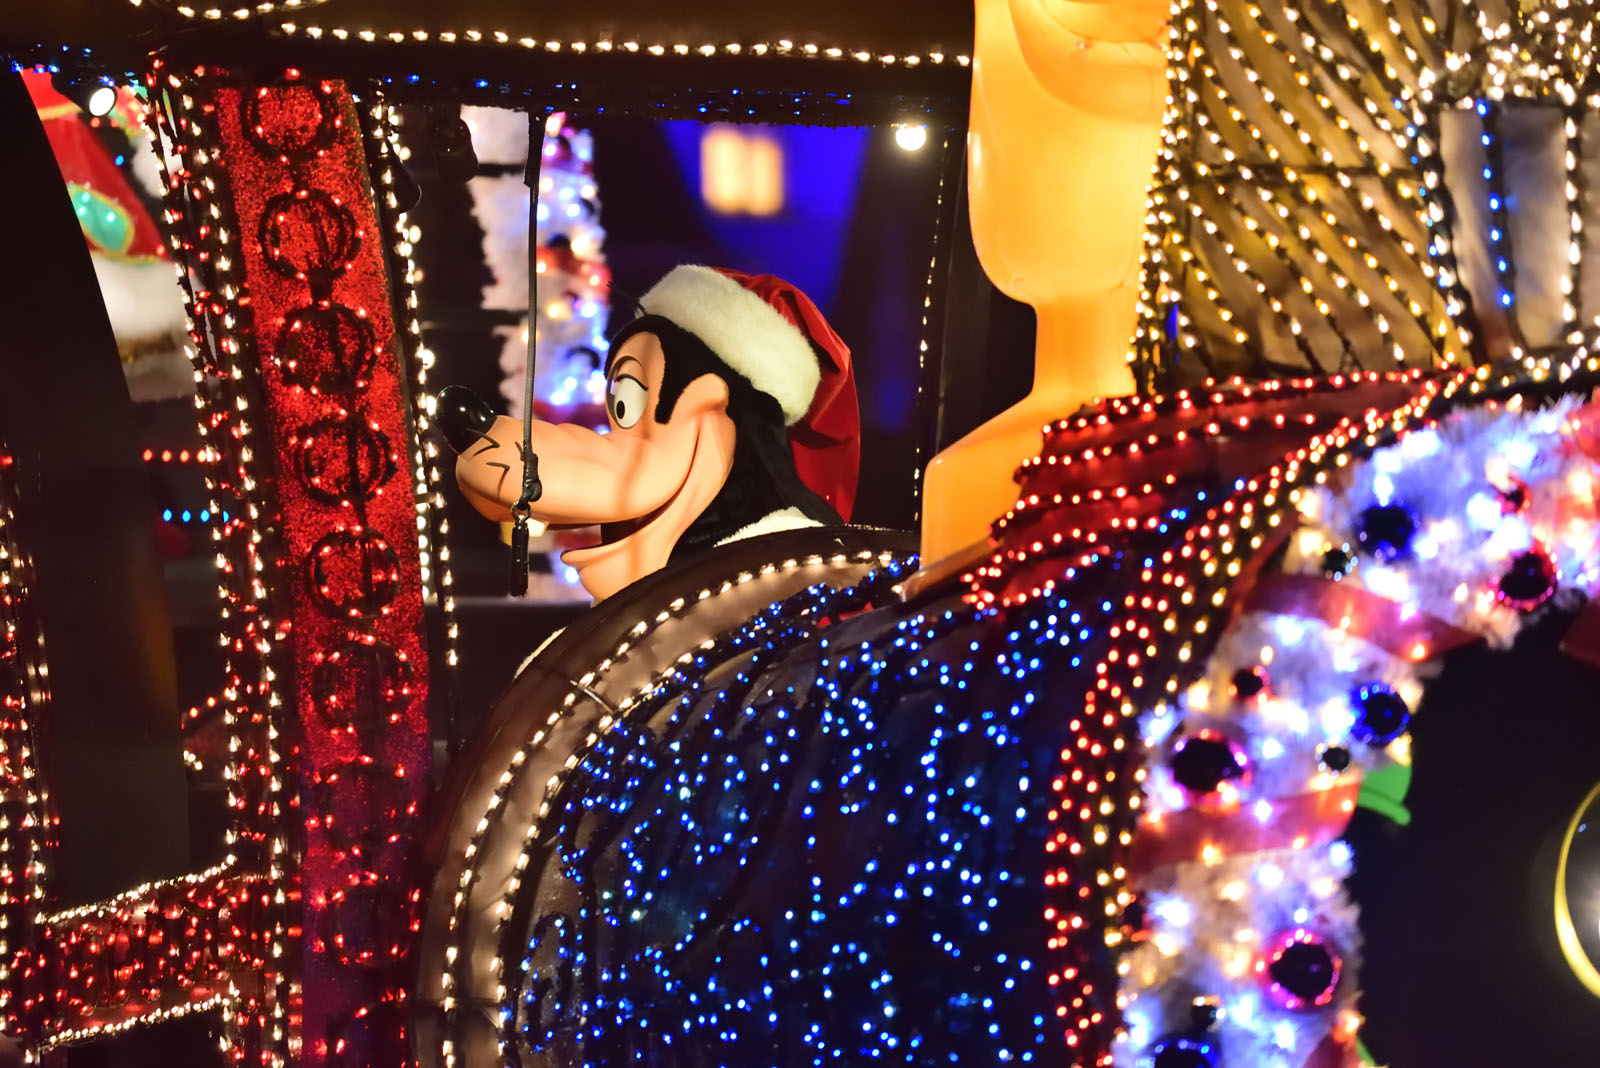 ディズニー・クリスマス2018 エレクトリカルパレード・ドリームライツ グーフィー